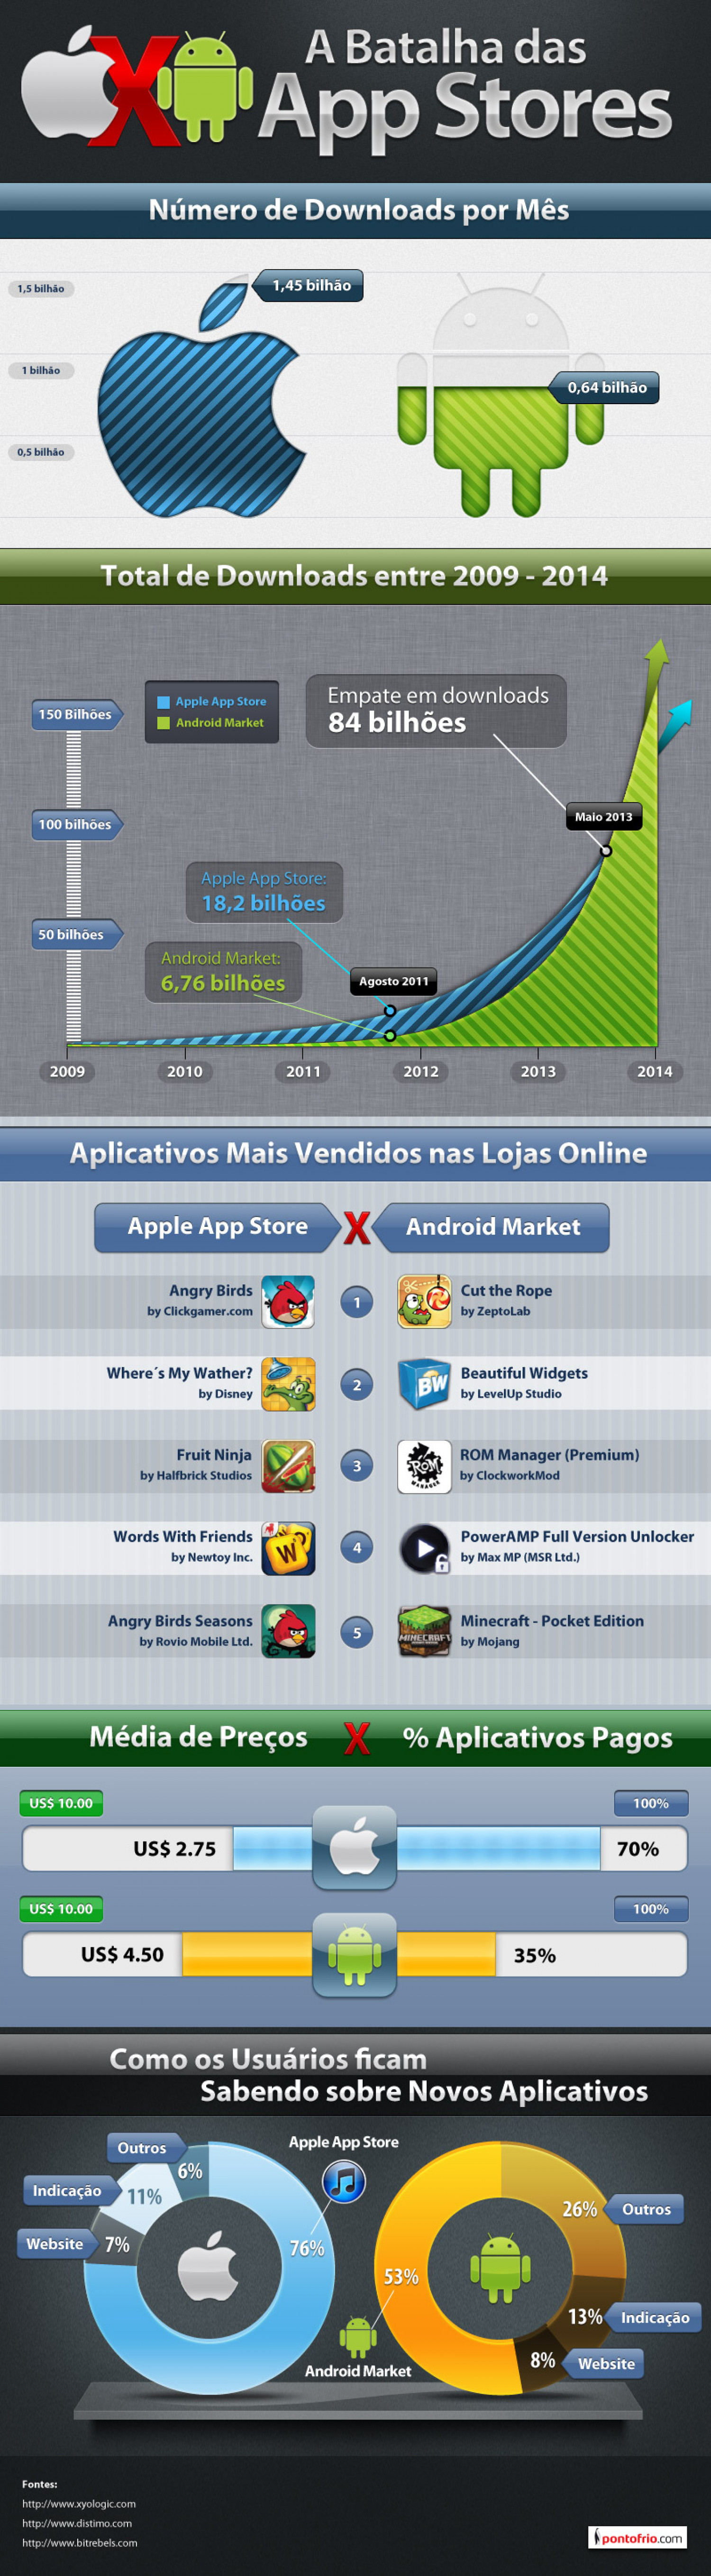 A Batalha das App Stores Infographic